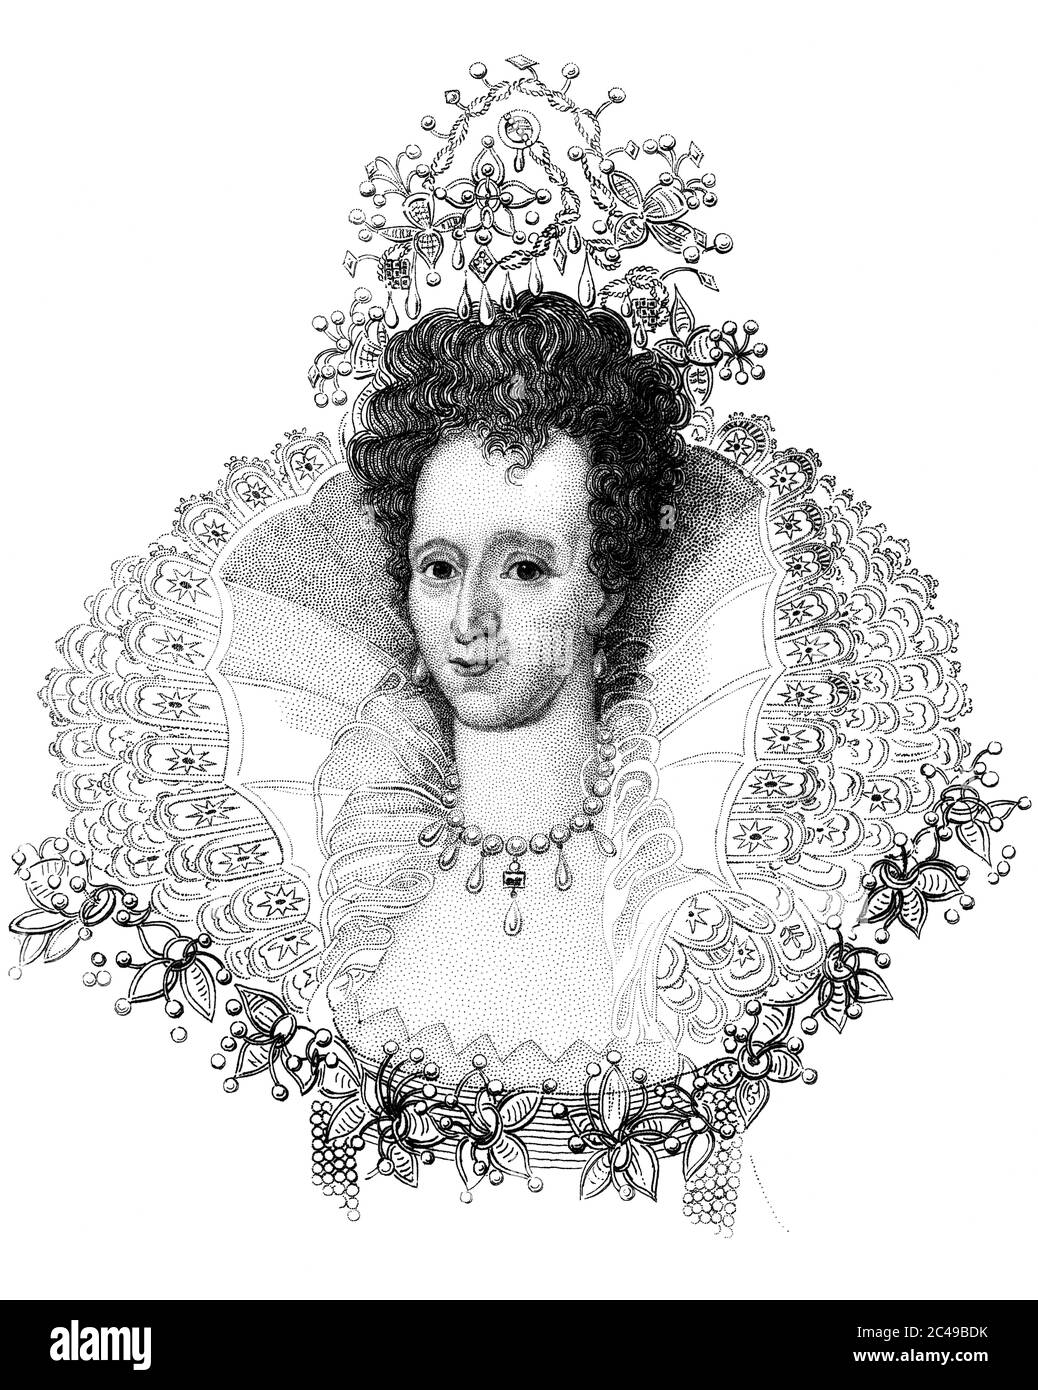 Une image gravée d'illustration d'un portrait d'une reine d'Angleterre Elizabeth I, Royaume-Uni, d'un livre victorien daté de 1847 qui n'est plus en droit d'auteur Banque D'Images